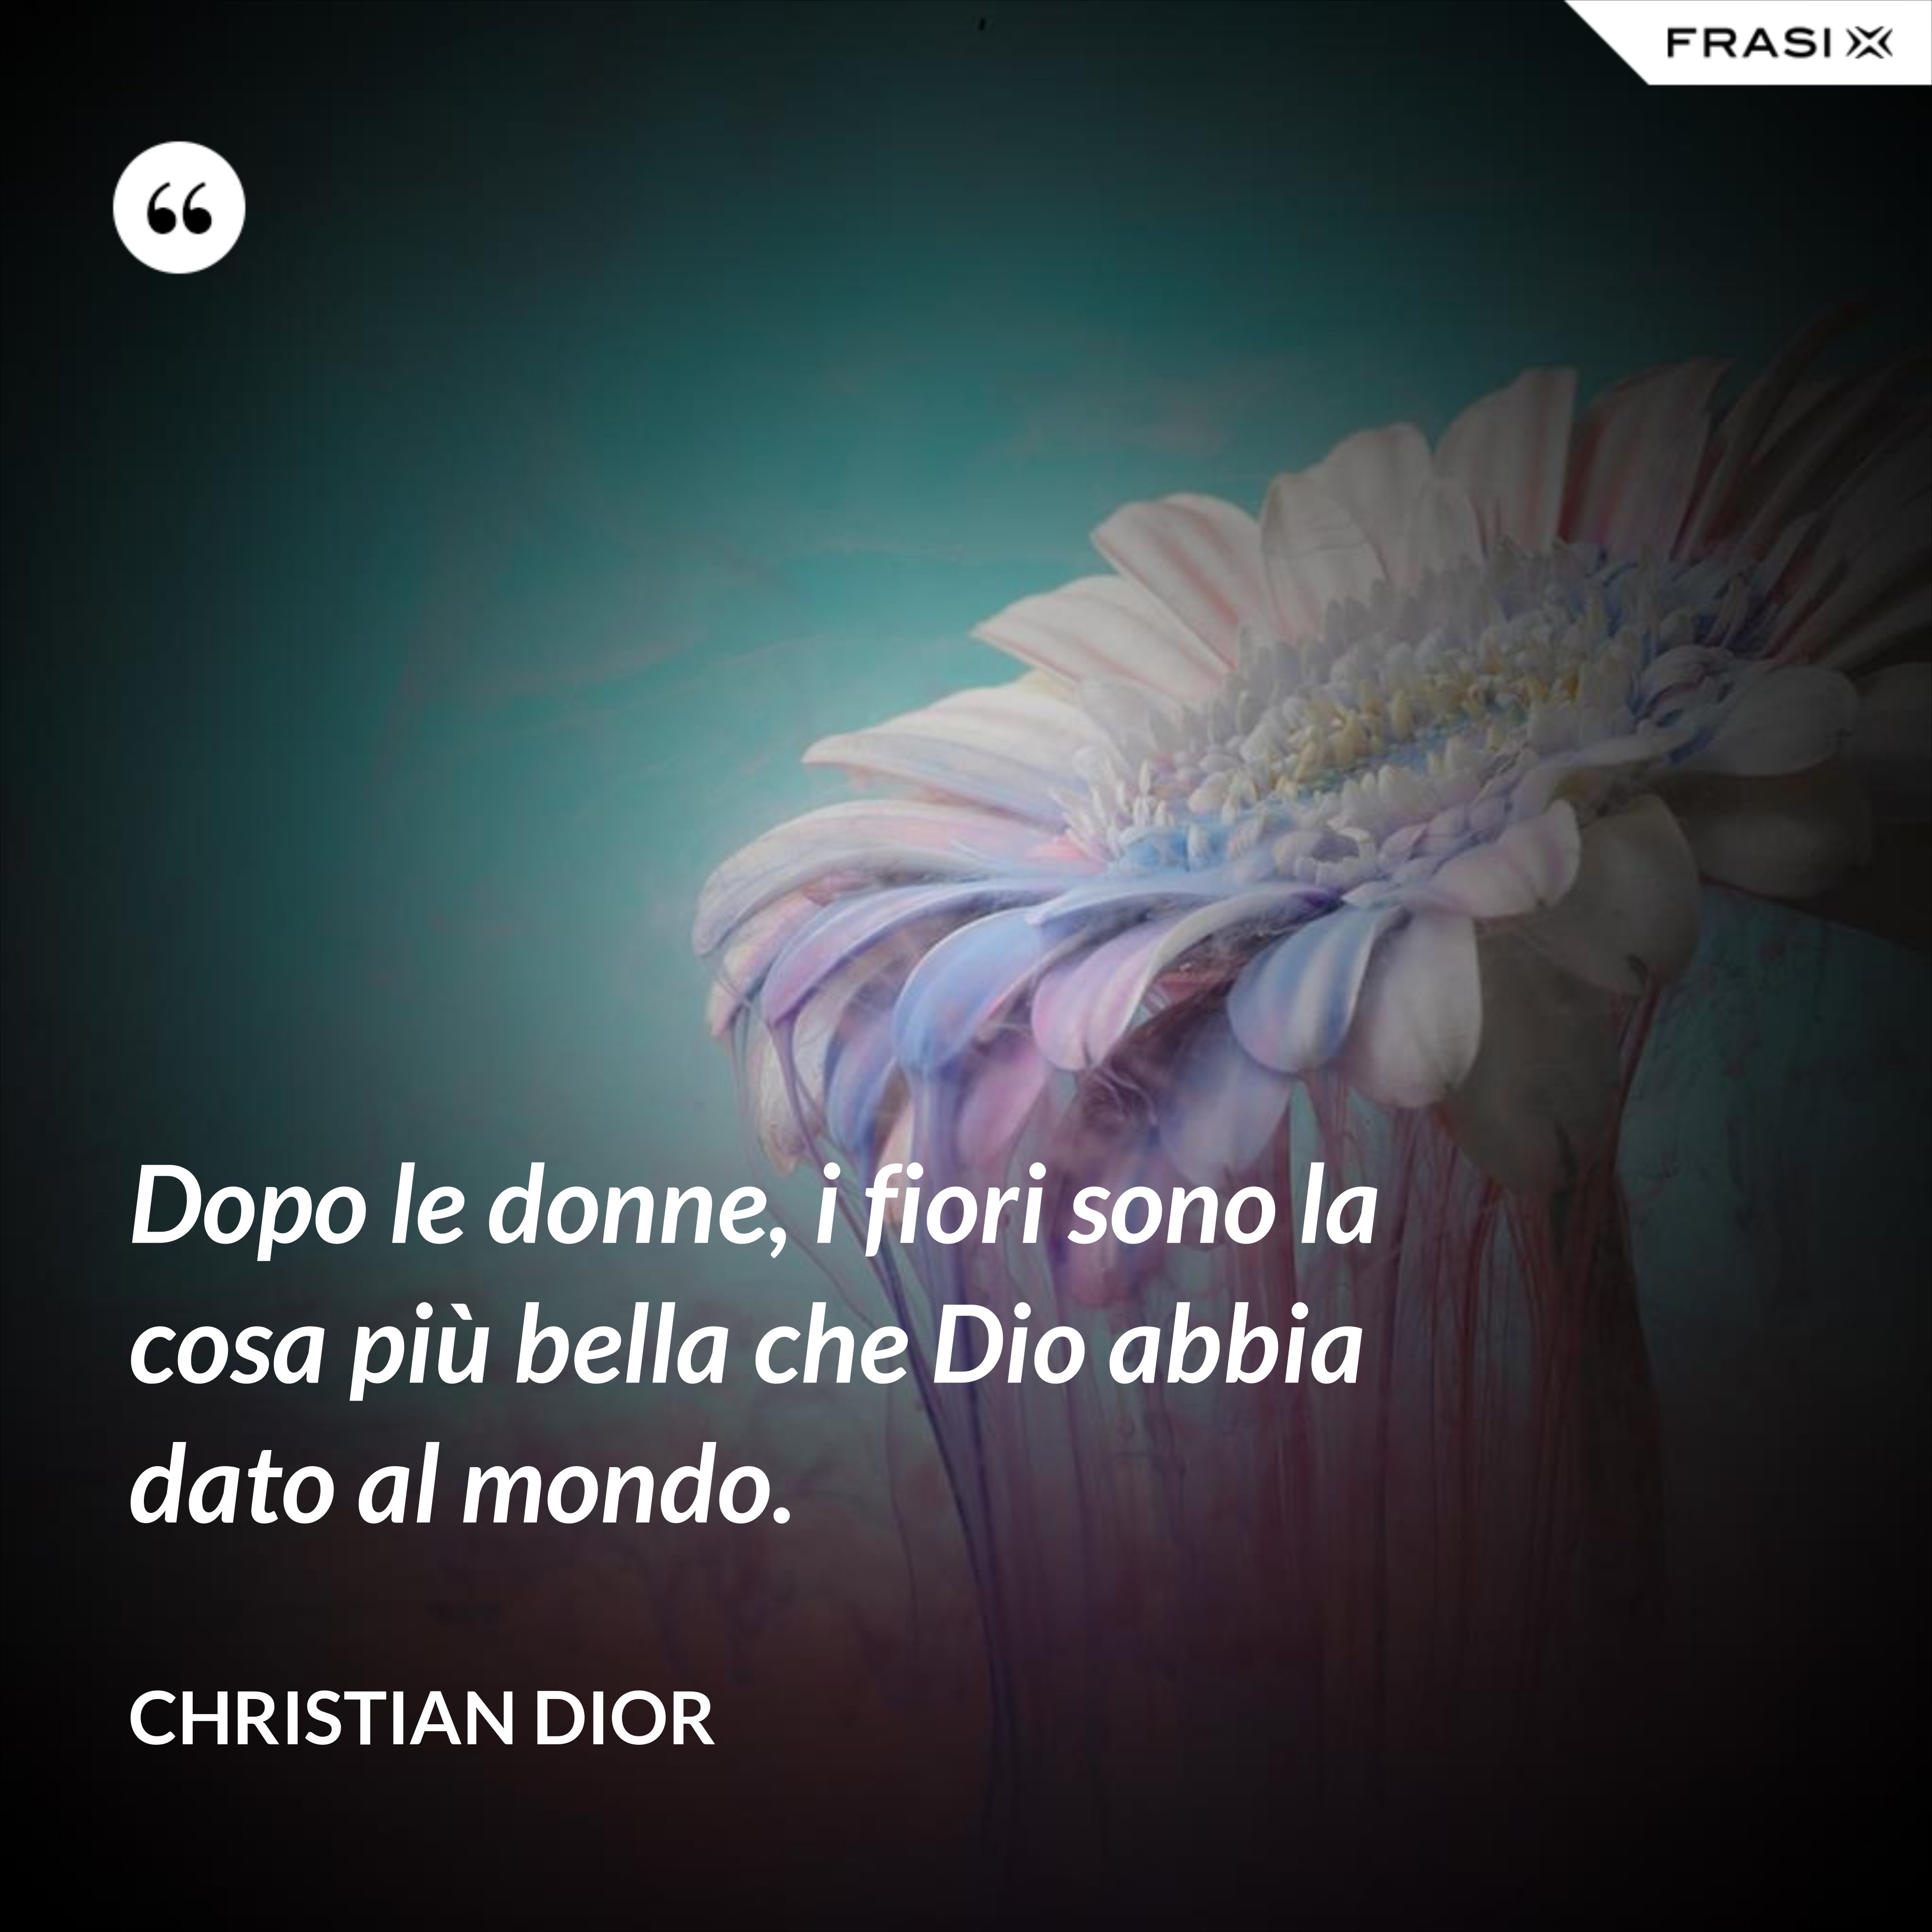 Dopo le donne, i fiori sono la cosa più bella che Dio abbia dato al mondo. - Christian Dior